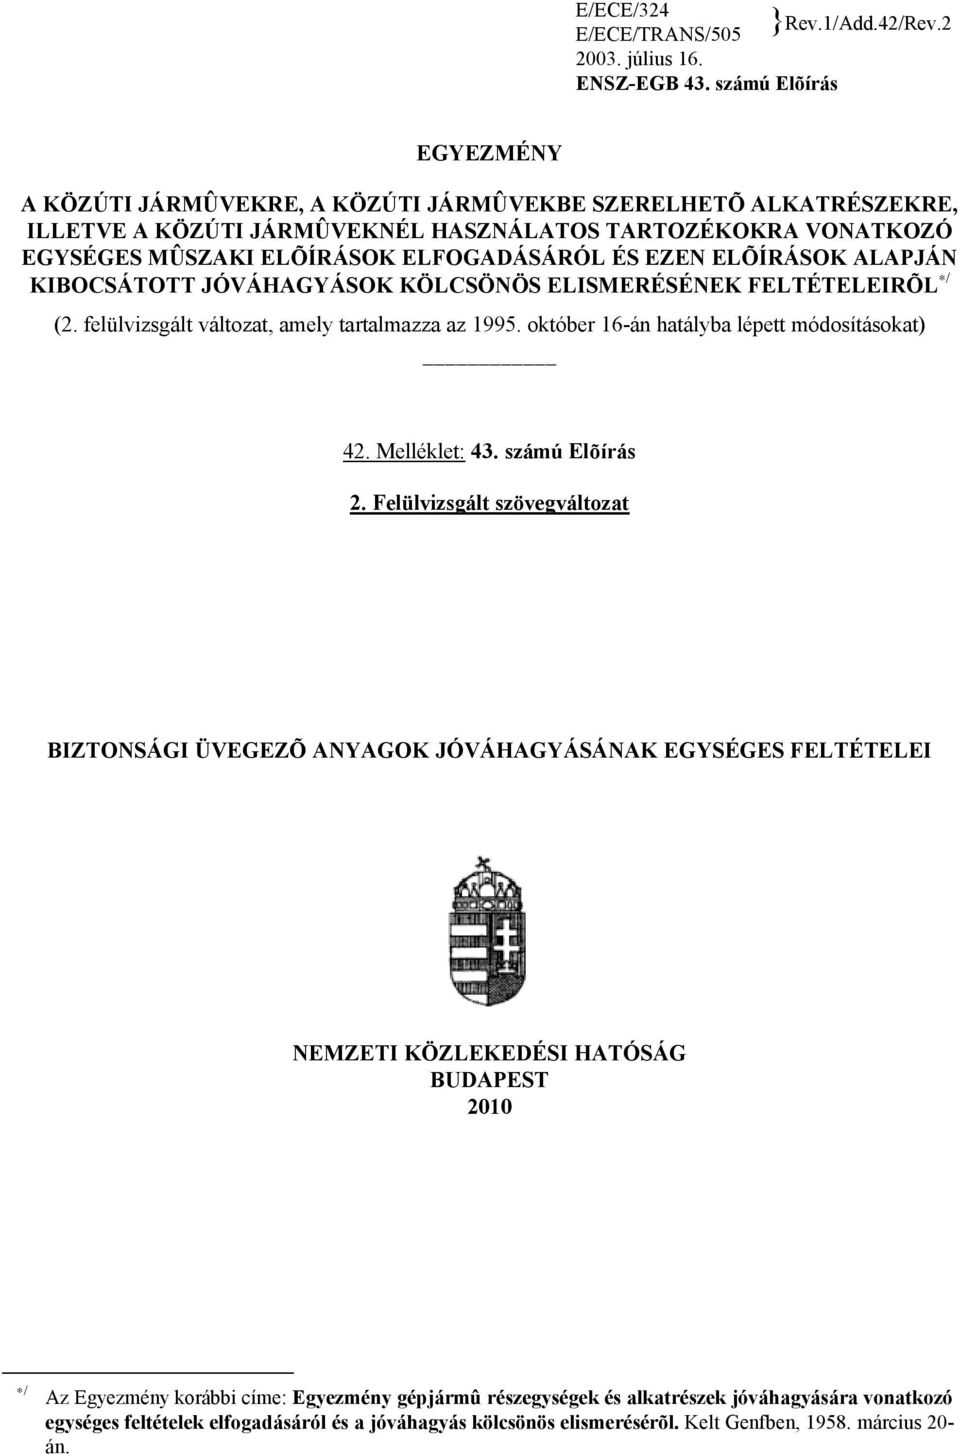 EZEN ELÕÍRÁSOK ALAPJÁN KIBOCSÁTOTT JÓVÁHAGYÁSOK KÖLCSÖNÖS ELISMERÉSÉNEK FELTÉTELEIRÕL / (2. felülvizsgált változat, amely tartalmazza az 1995. október 16-án hatályba lépett módosításokat) 42.